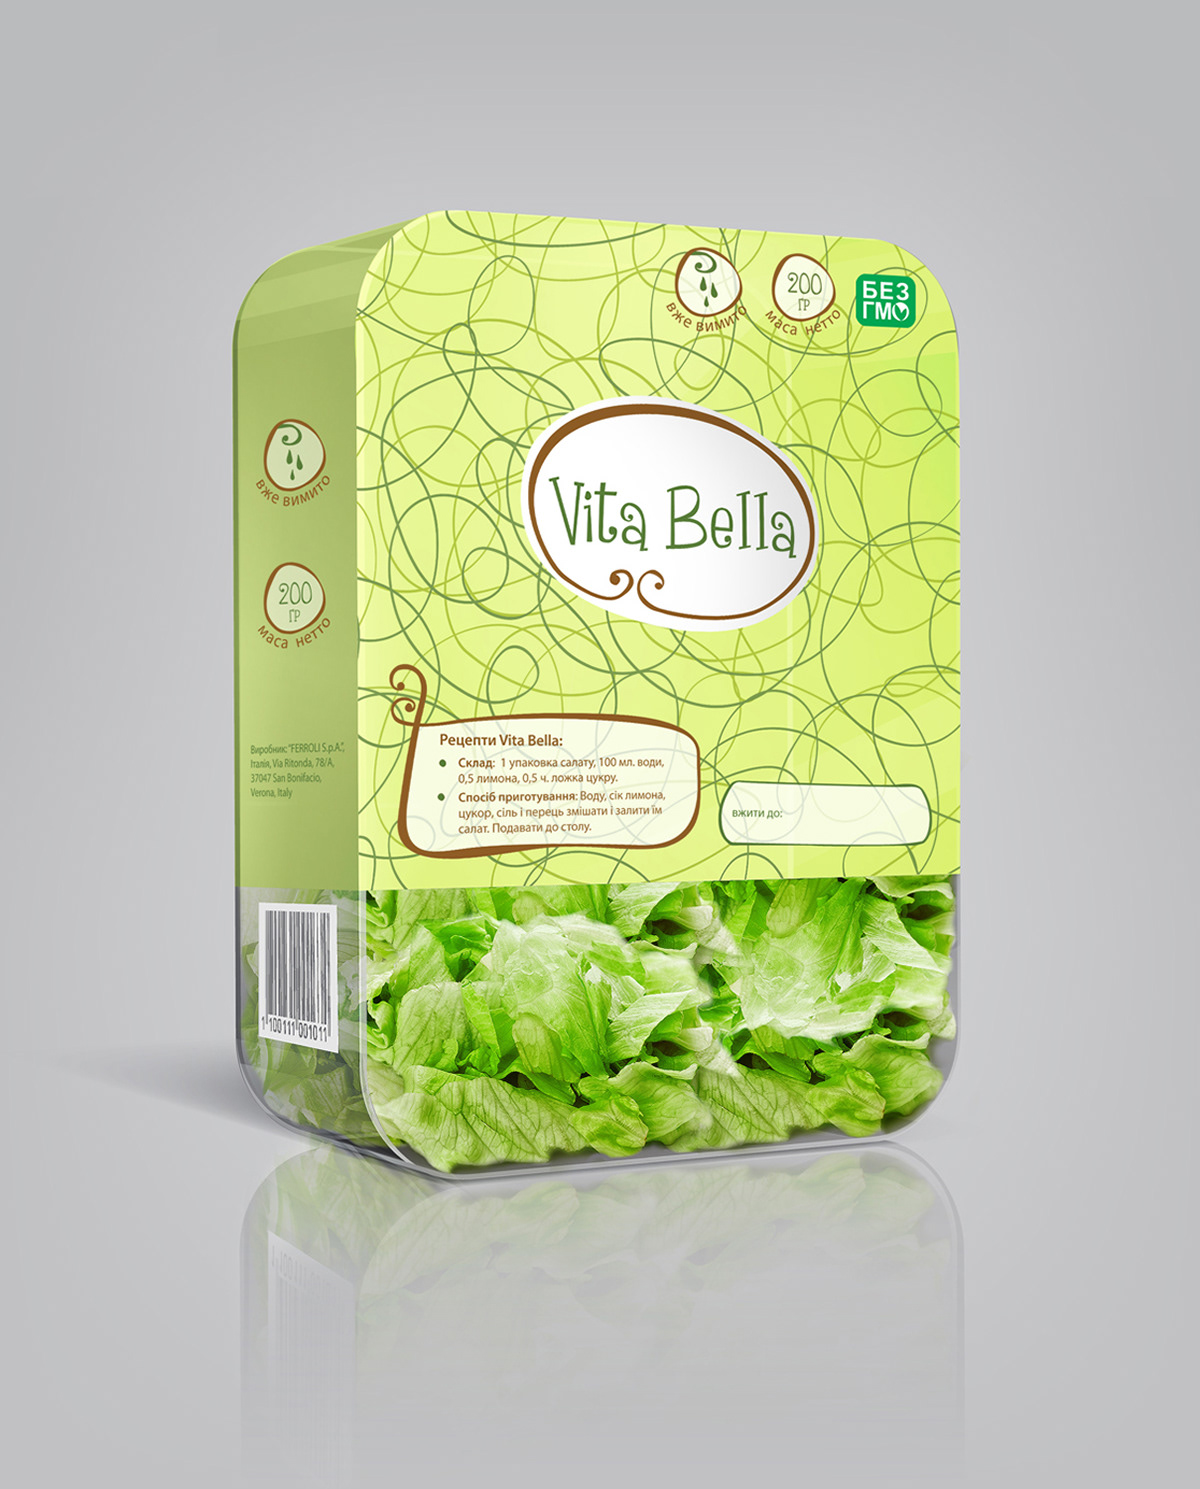 salad Pack Packaging fresh eat